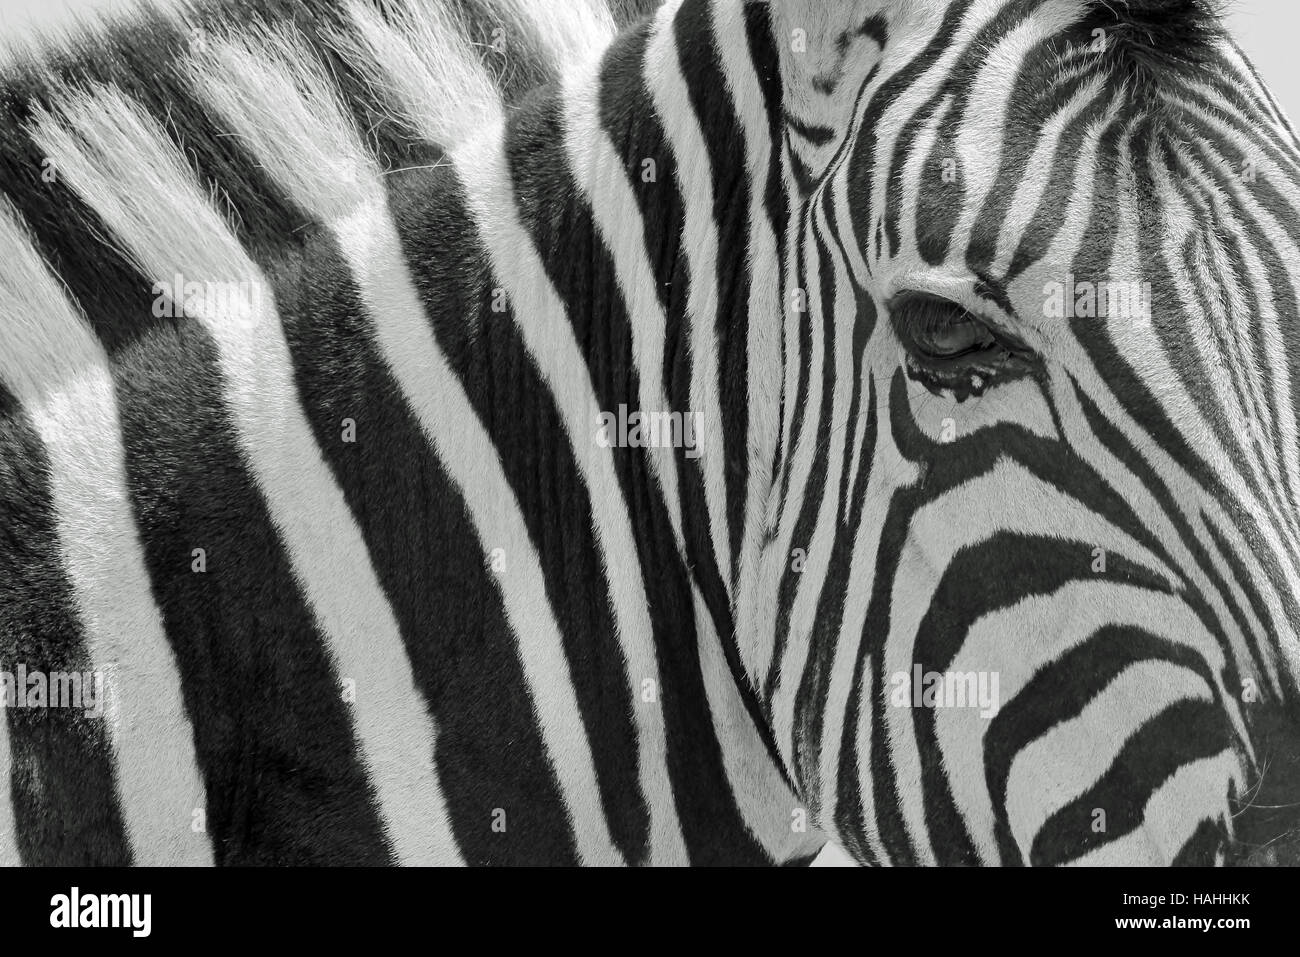 Zebra Stare - fond de la faune africaine - Icône de bandes noires et blanches Banque D'Images